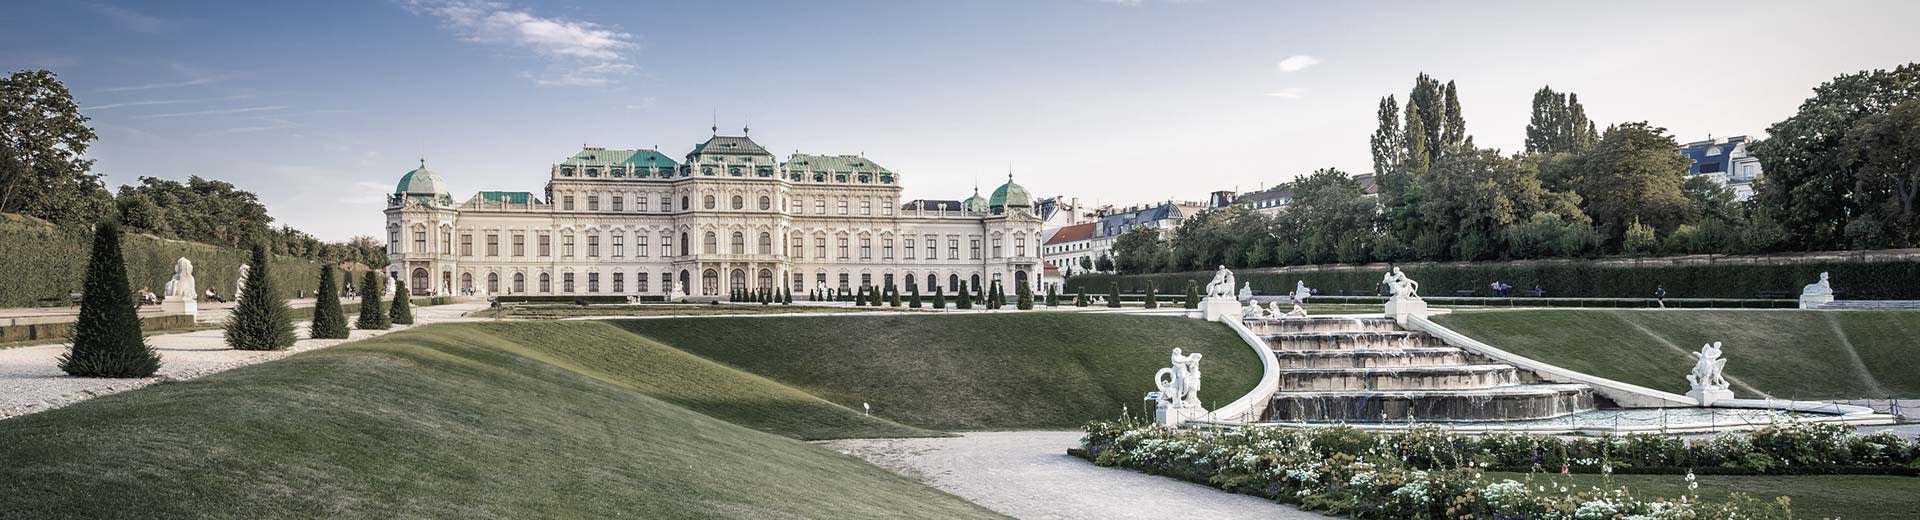 在晴朗的日子里，举世闻名的美泉宫（Schönbrunn Palace）坐落在修剪整齐的草坪中。